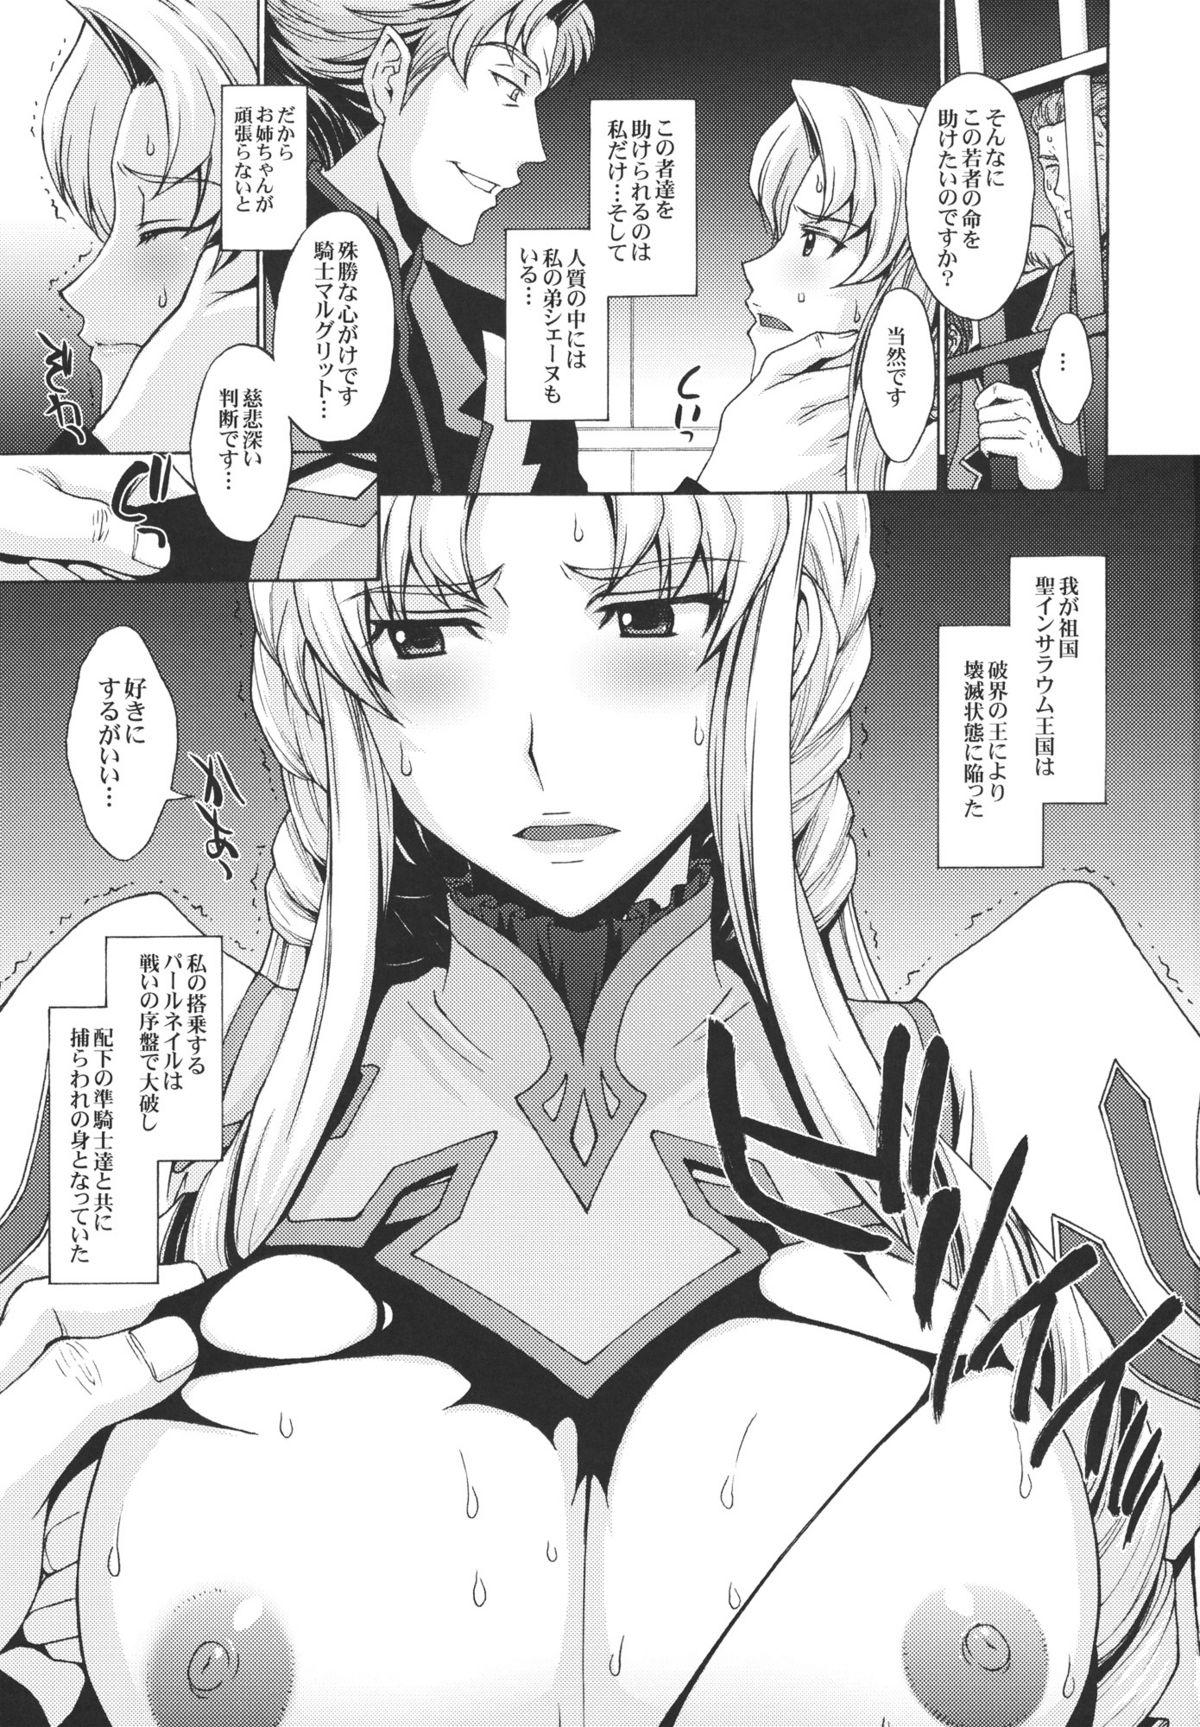 Muscles Anekishi no Shojo wa Hei-tachi no Mae de Chirasareta. - Super robot wars Fingers - Page 2